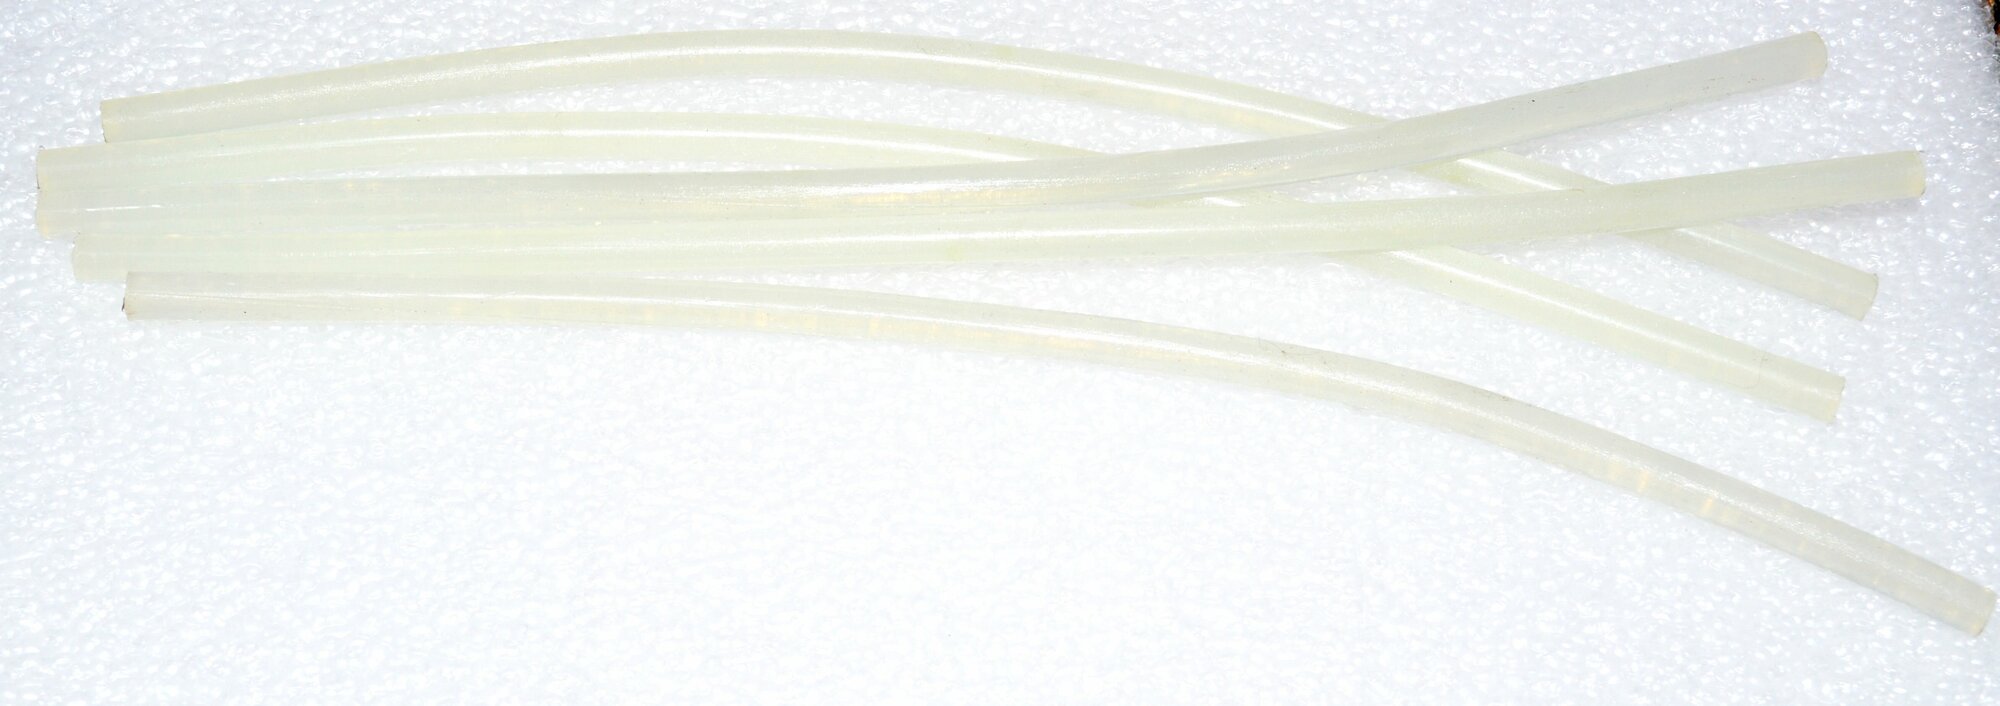 Клеевые стержни для клеевого термопистолета -5 штук, длина: 27см, диаметр: 7мм - фотография № 1